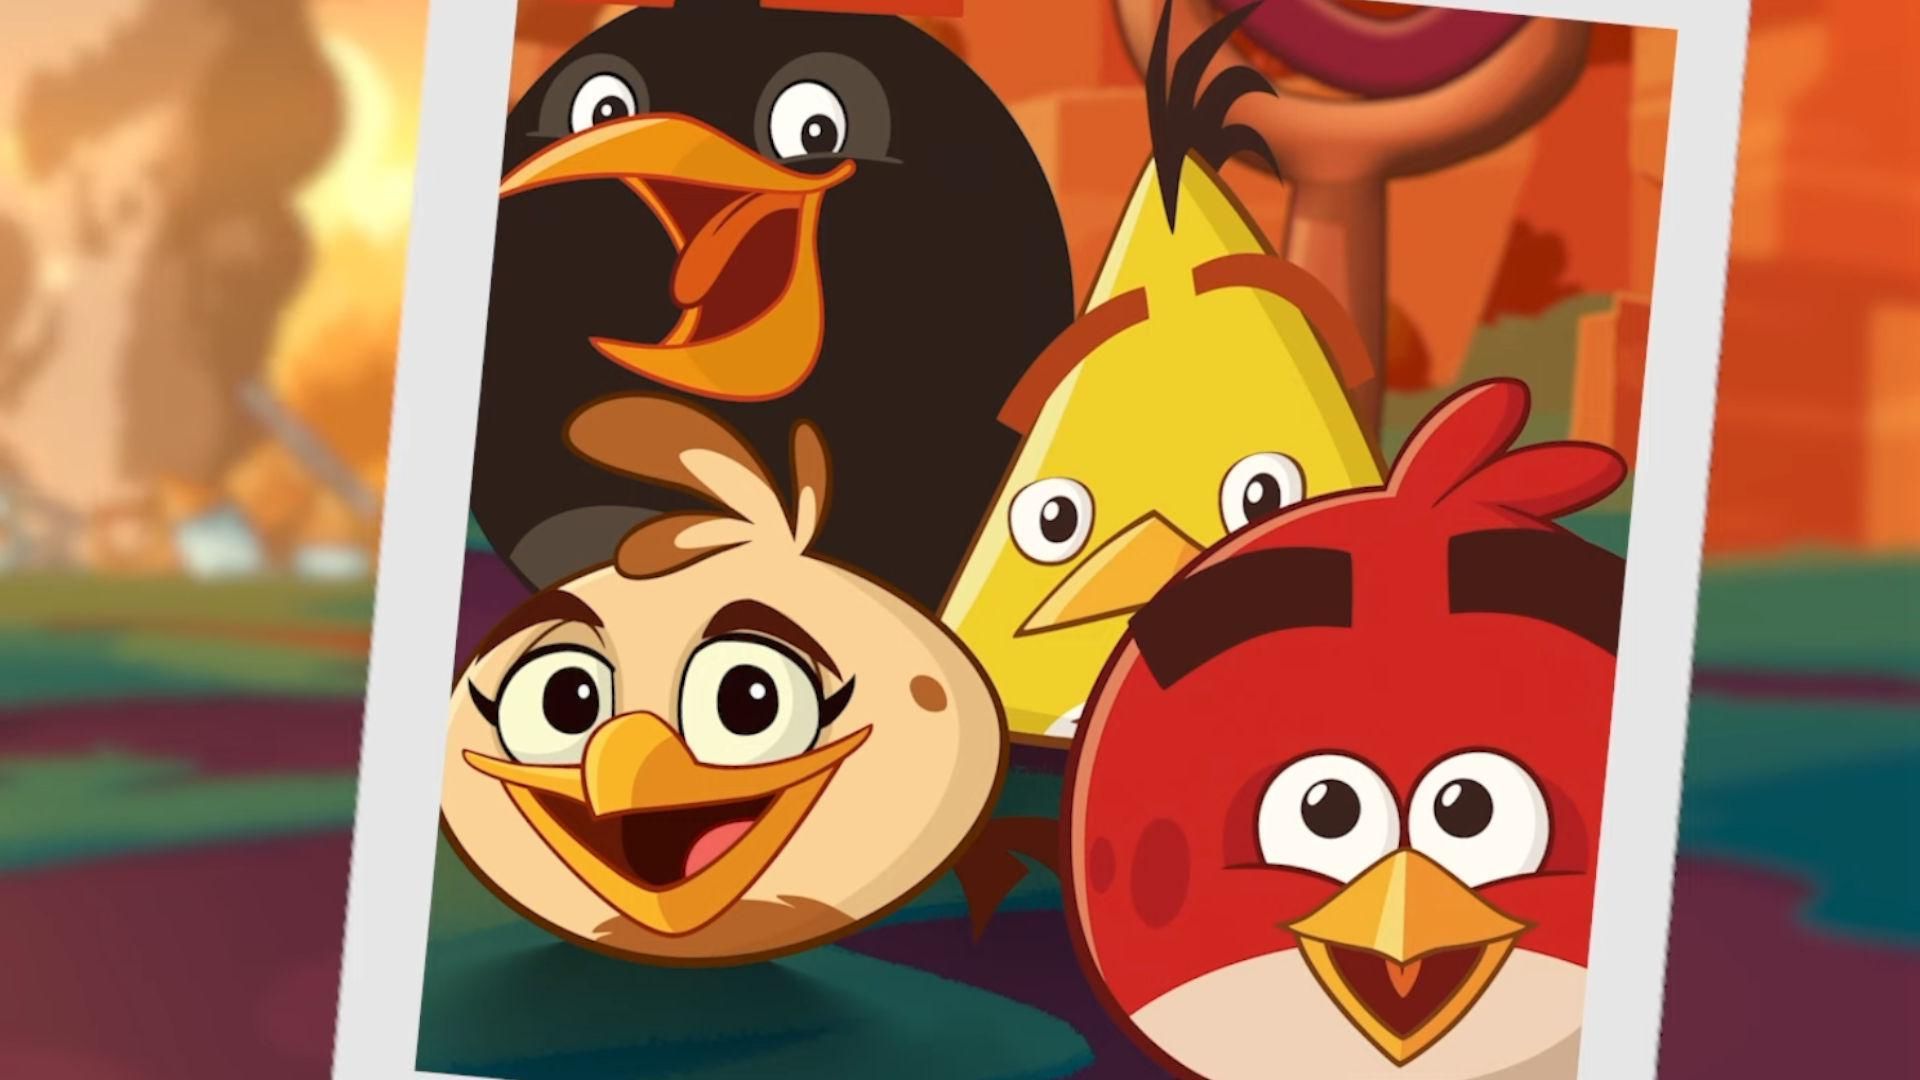 Melody, una nueva protagonista de aves con habilidades musicales excepcionales, se ha unido a Angry Birds 2. Tal vez te estés preguntando cómo desbloquear a Melody en Angry Birds 2.... 